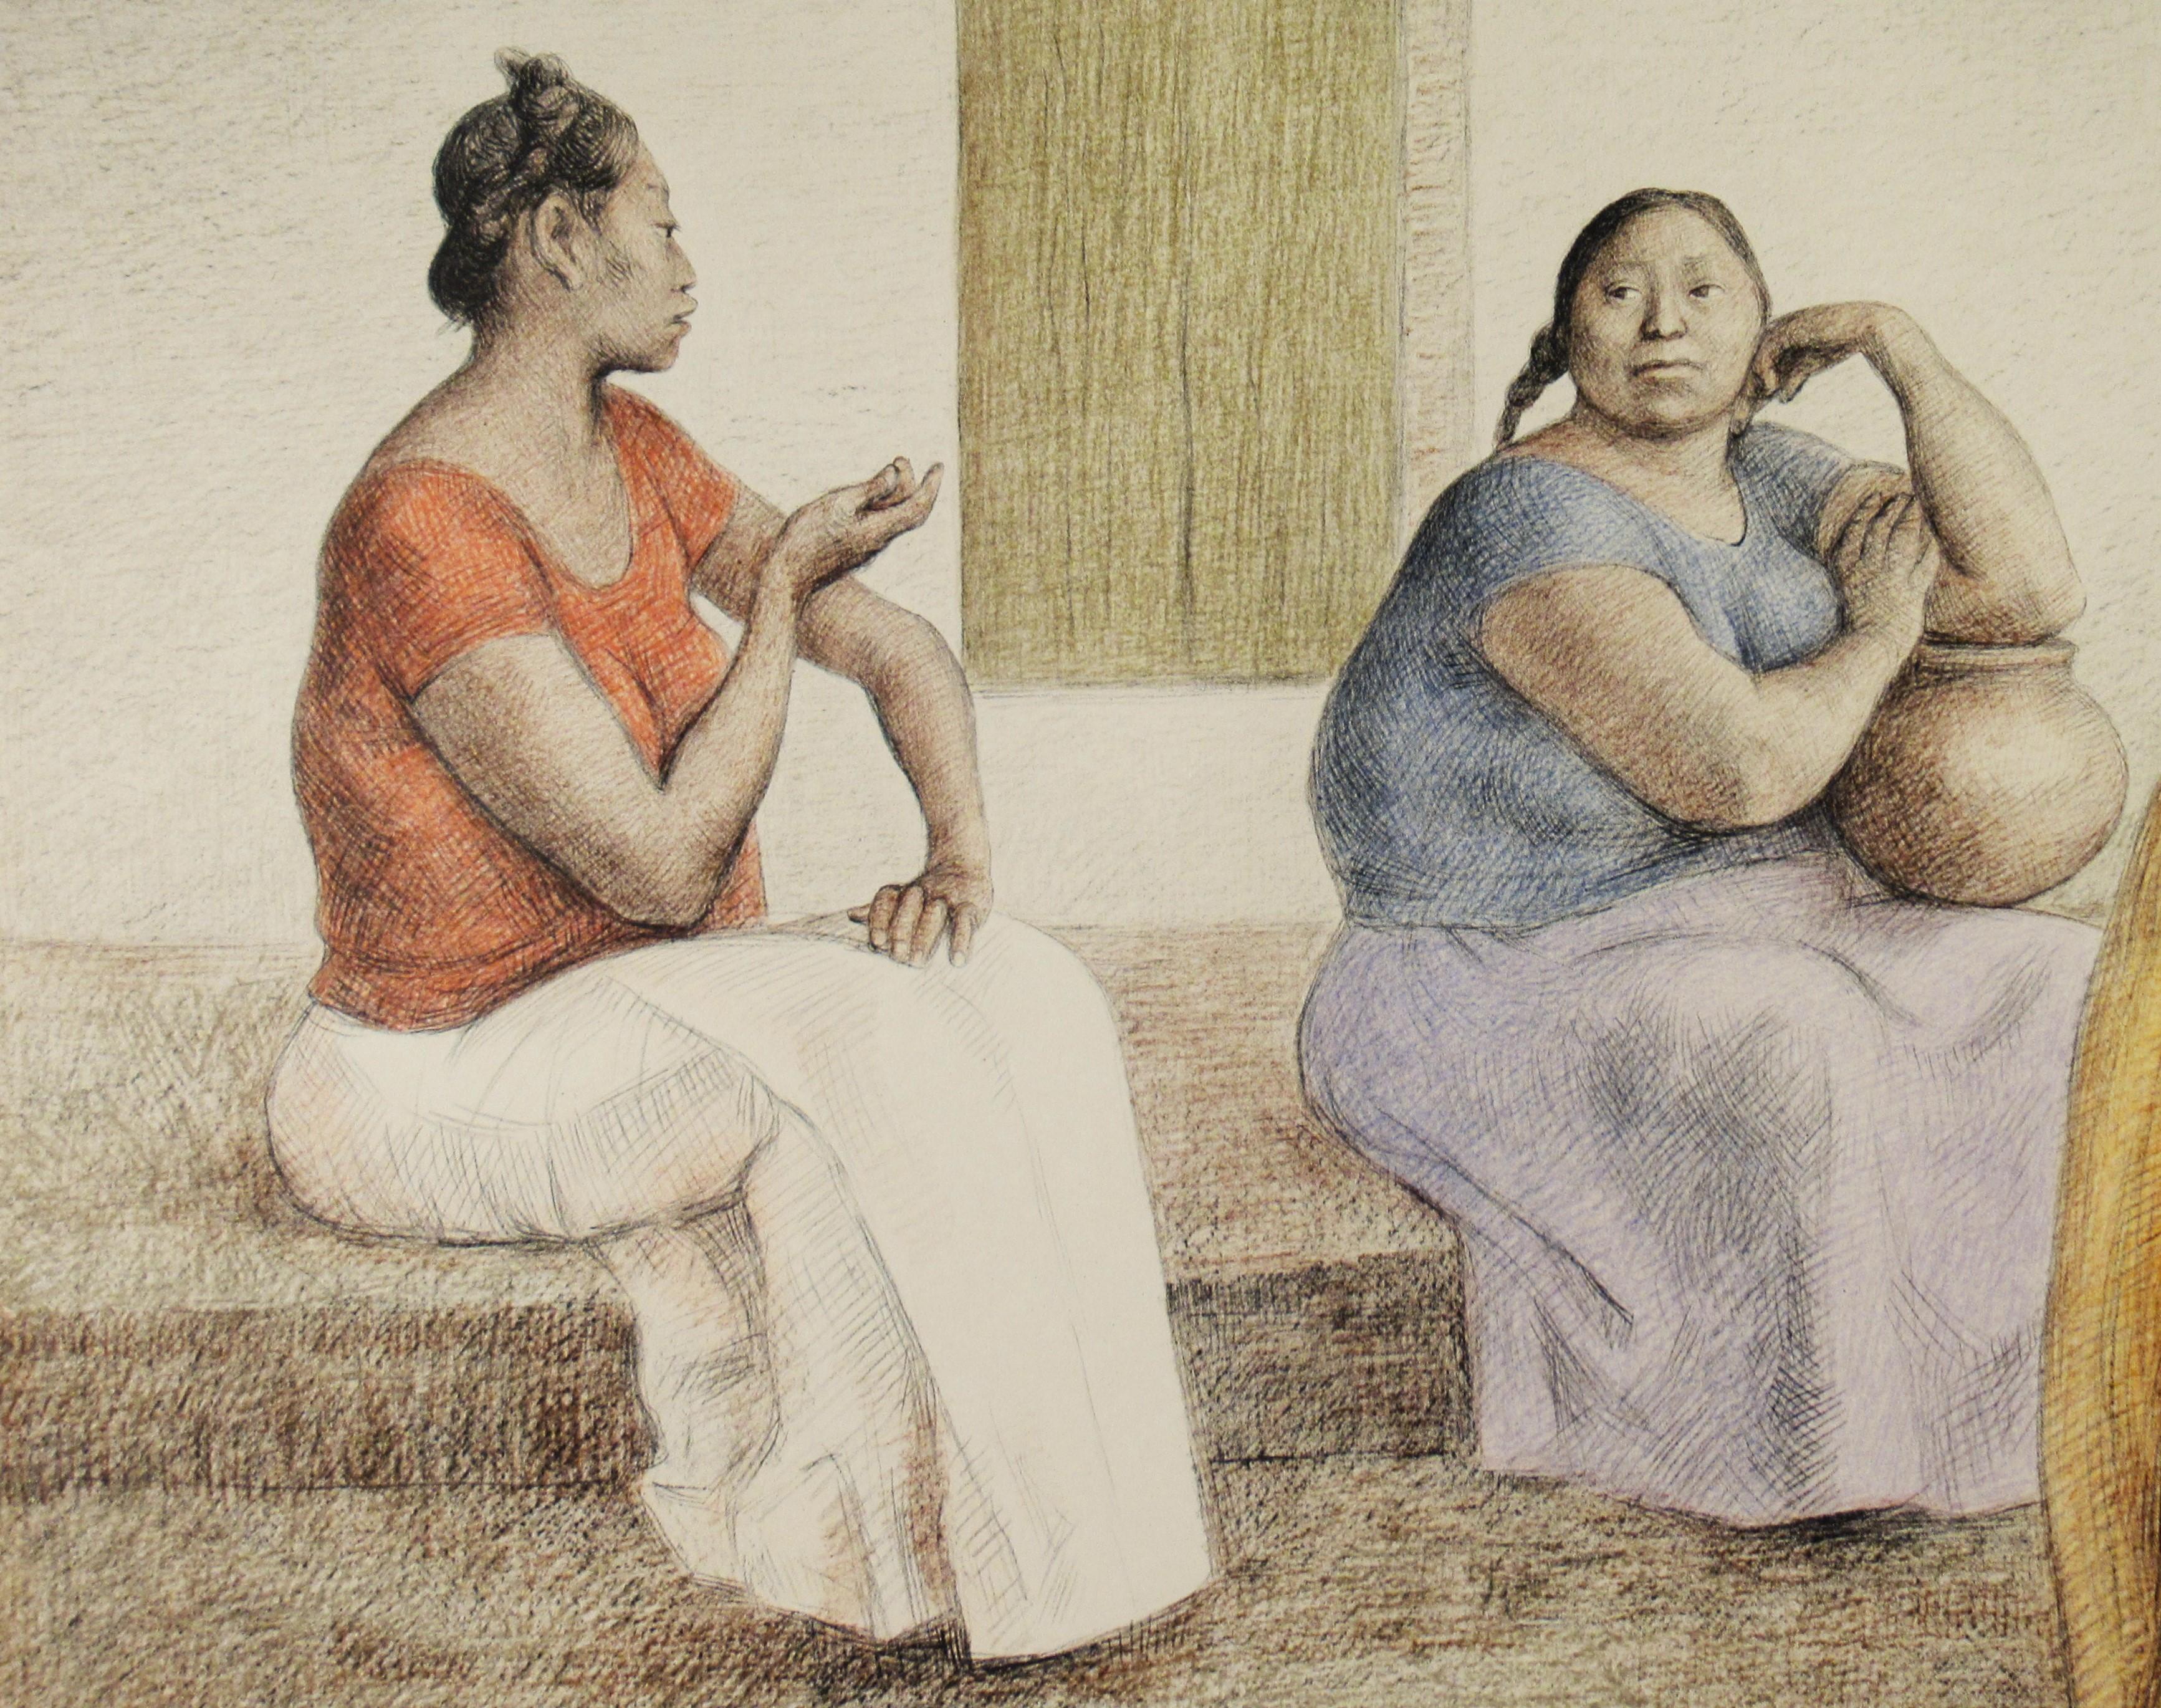 Le Platicando de Juchiteca (Femmes juchécoises discutant) - Réalisme Print par Francisco Zúñiga